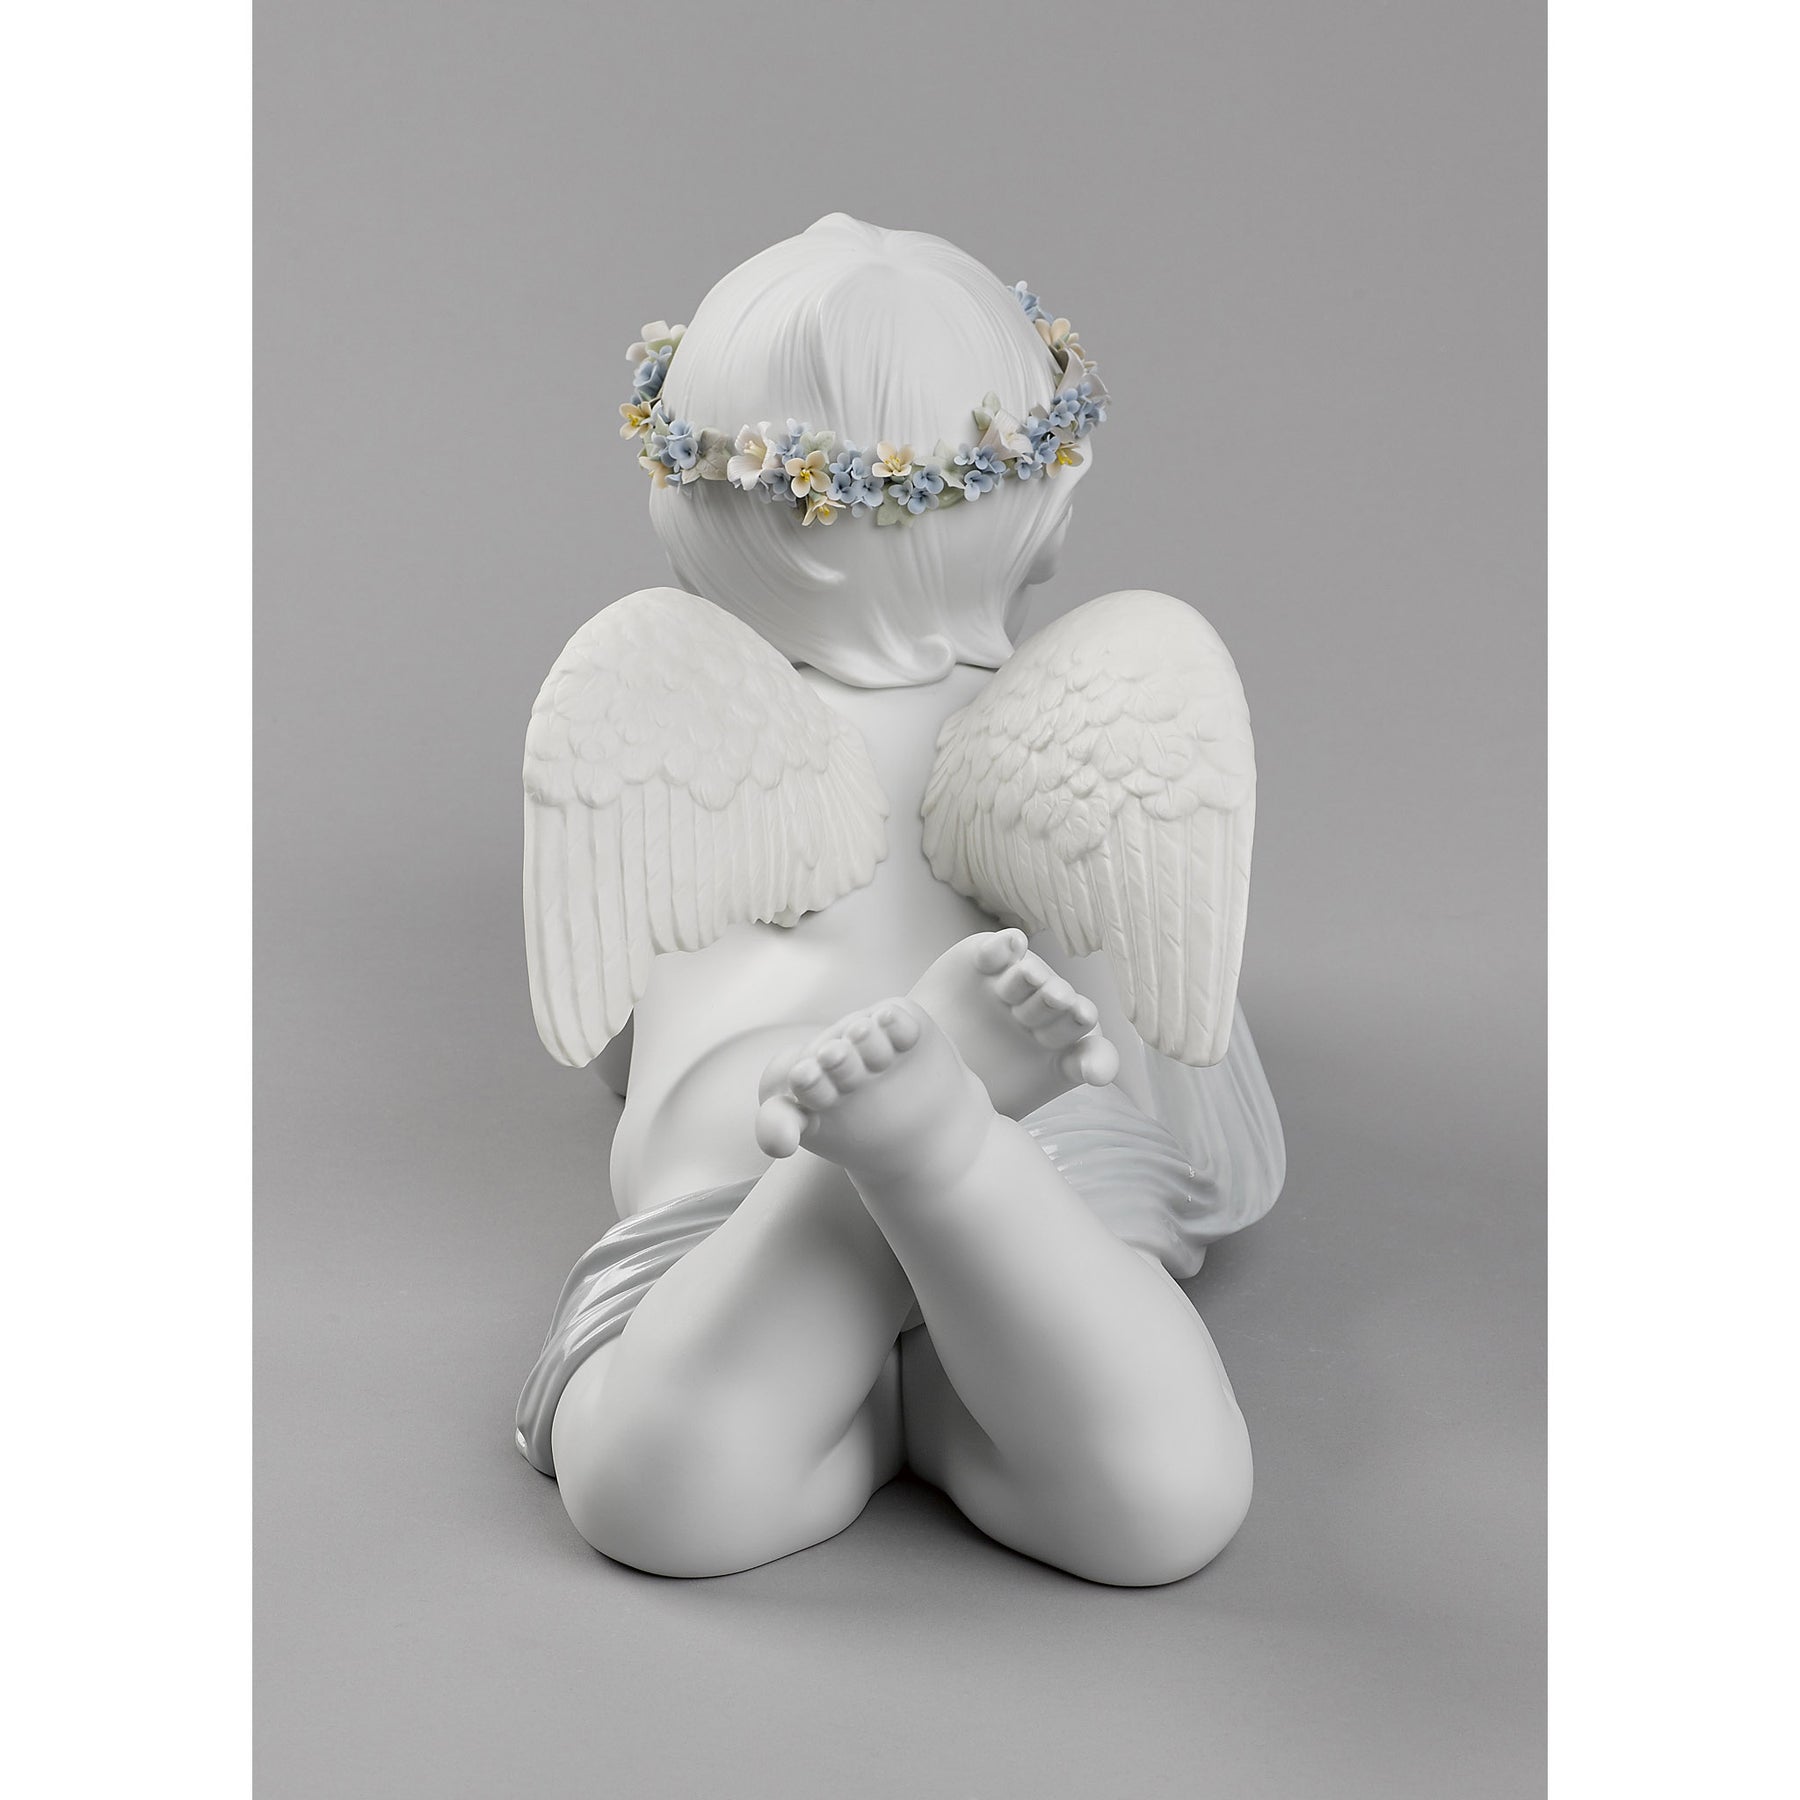 My Loving Angel Figurine – Regis Galerie